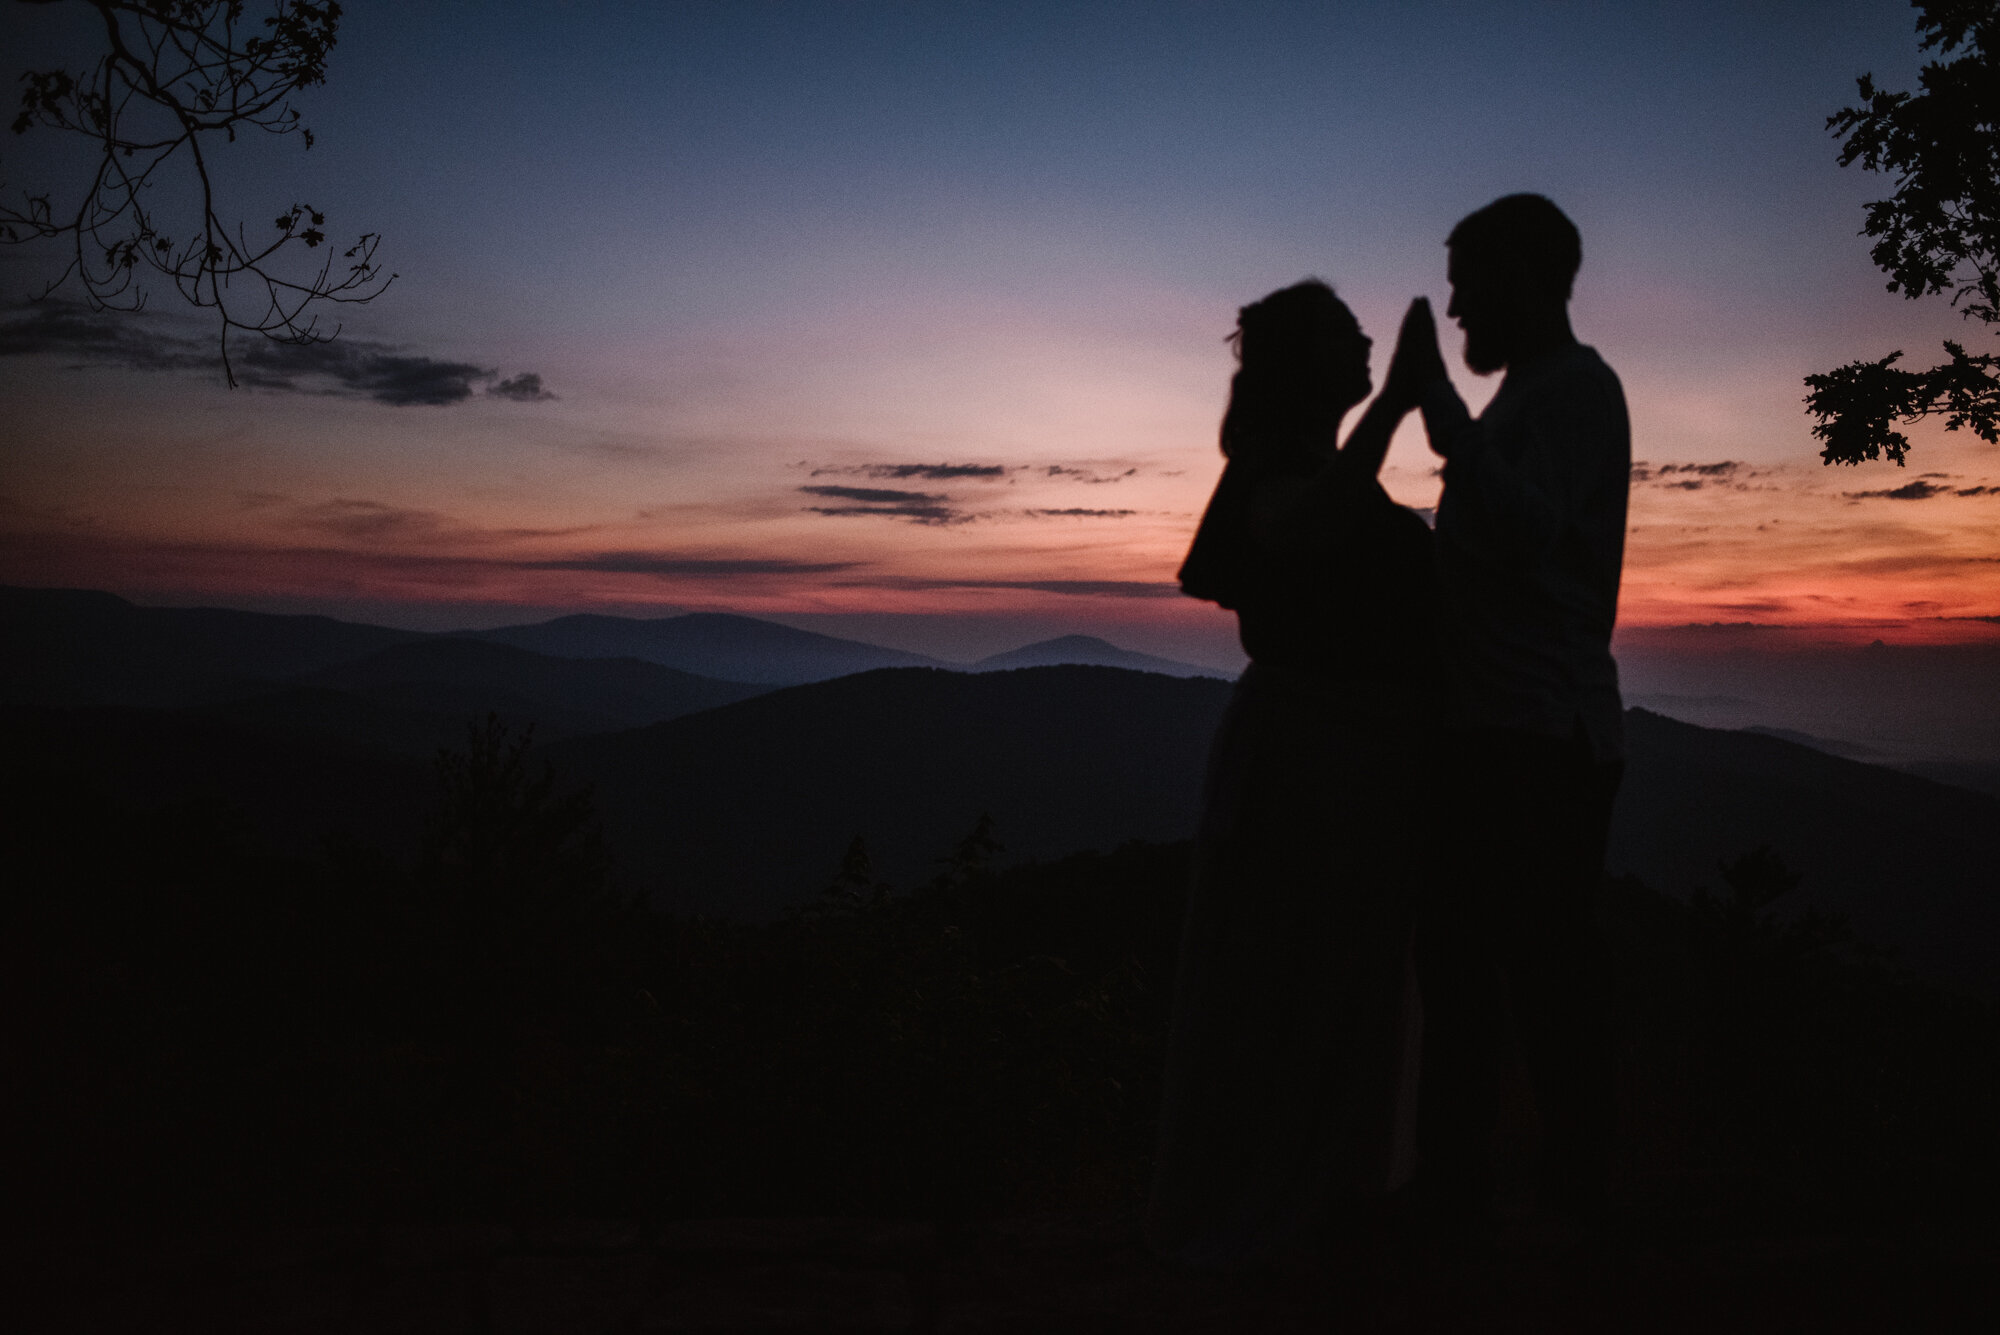 Sunrise Photoshoot - Adventurous Couple Session - Shenandoah National Park Photographer - White Sails Creative .jpg